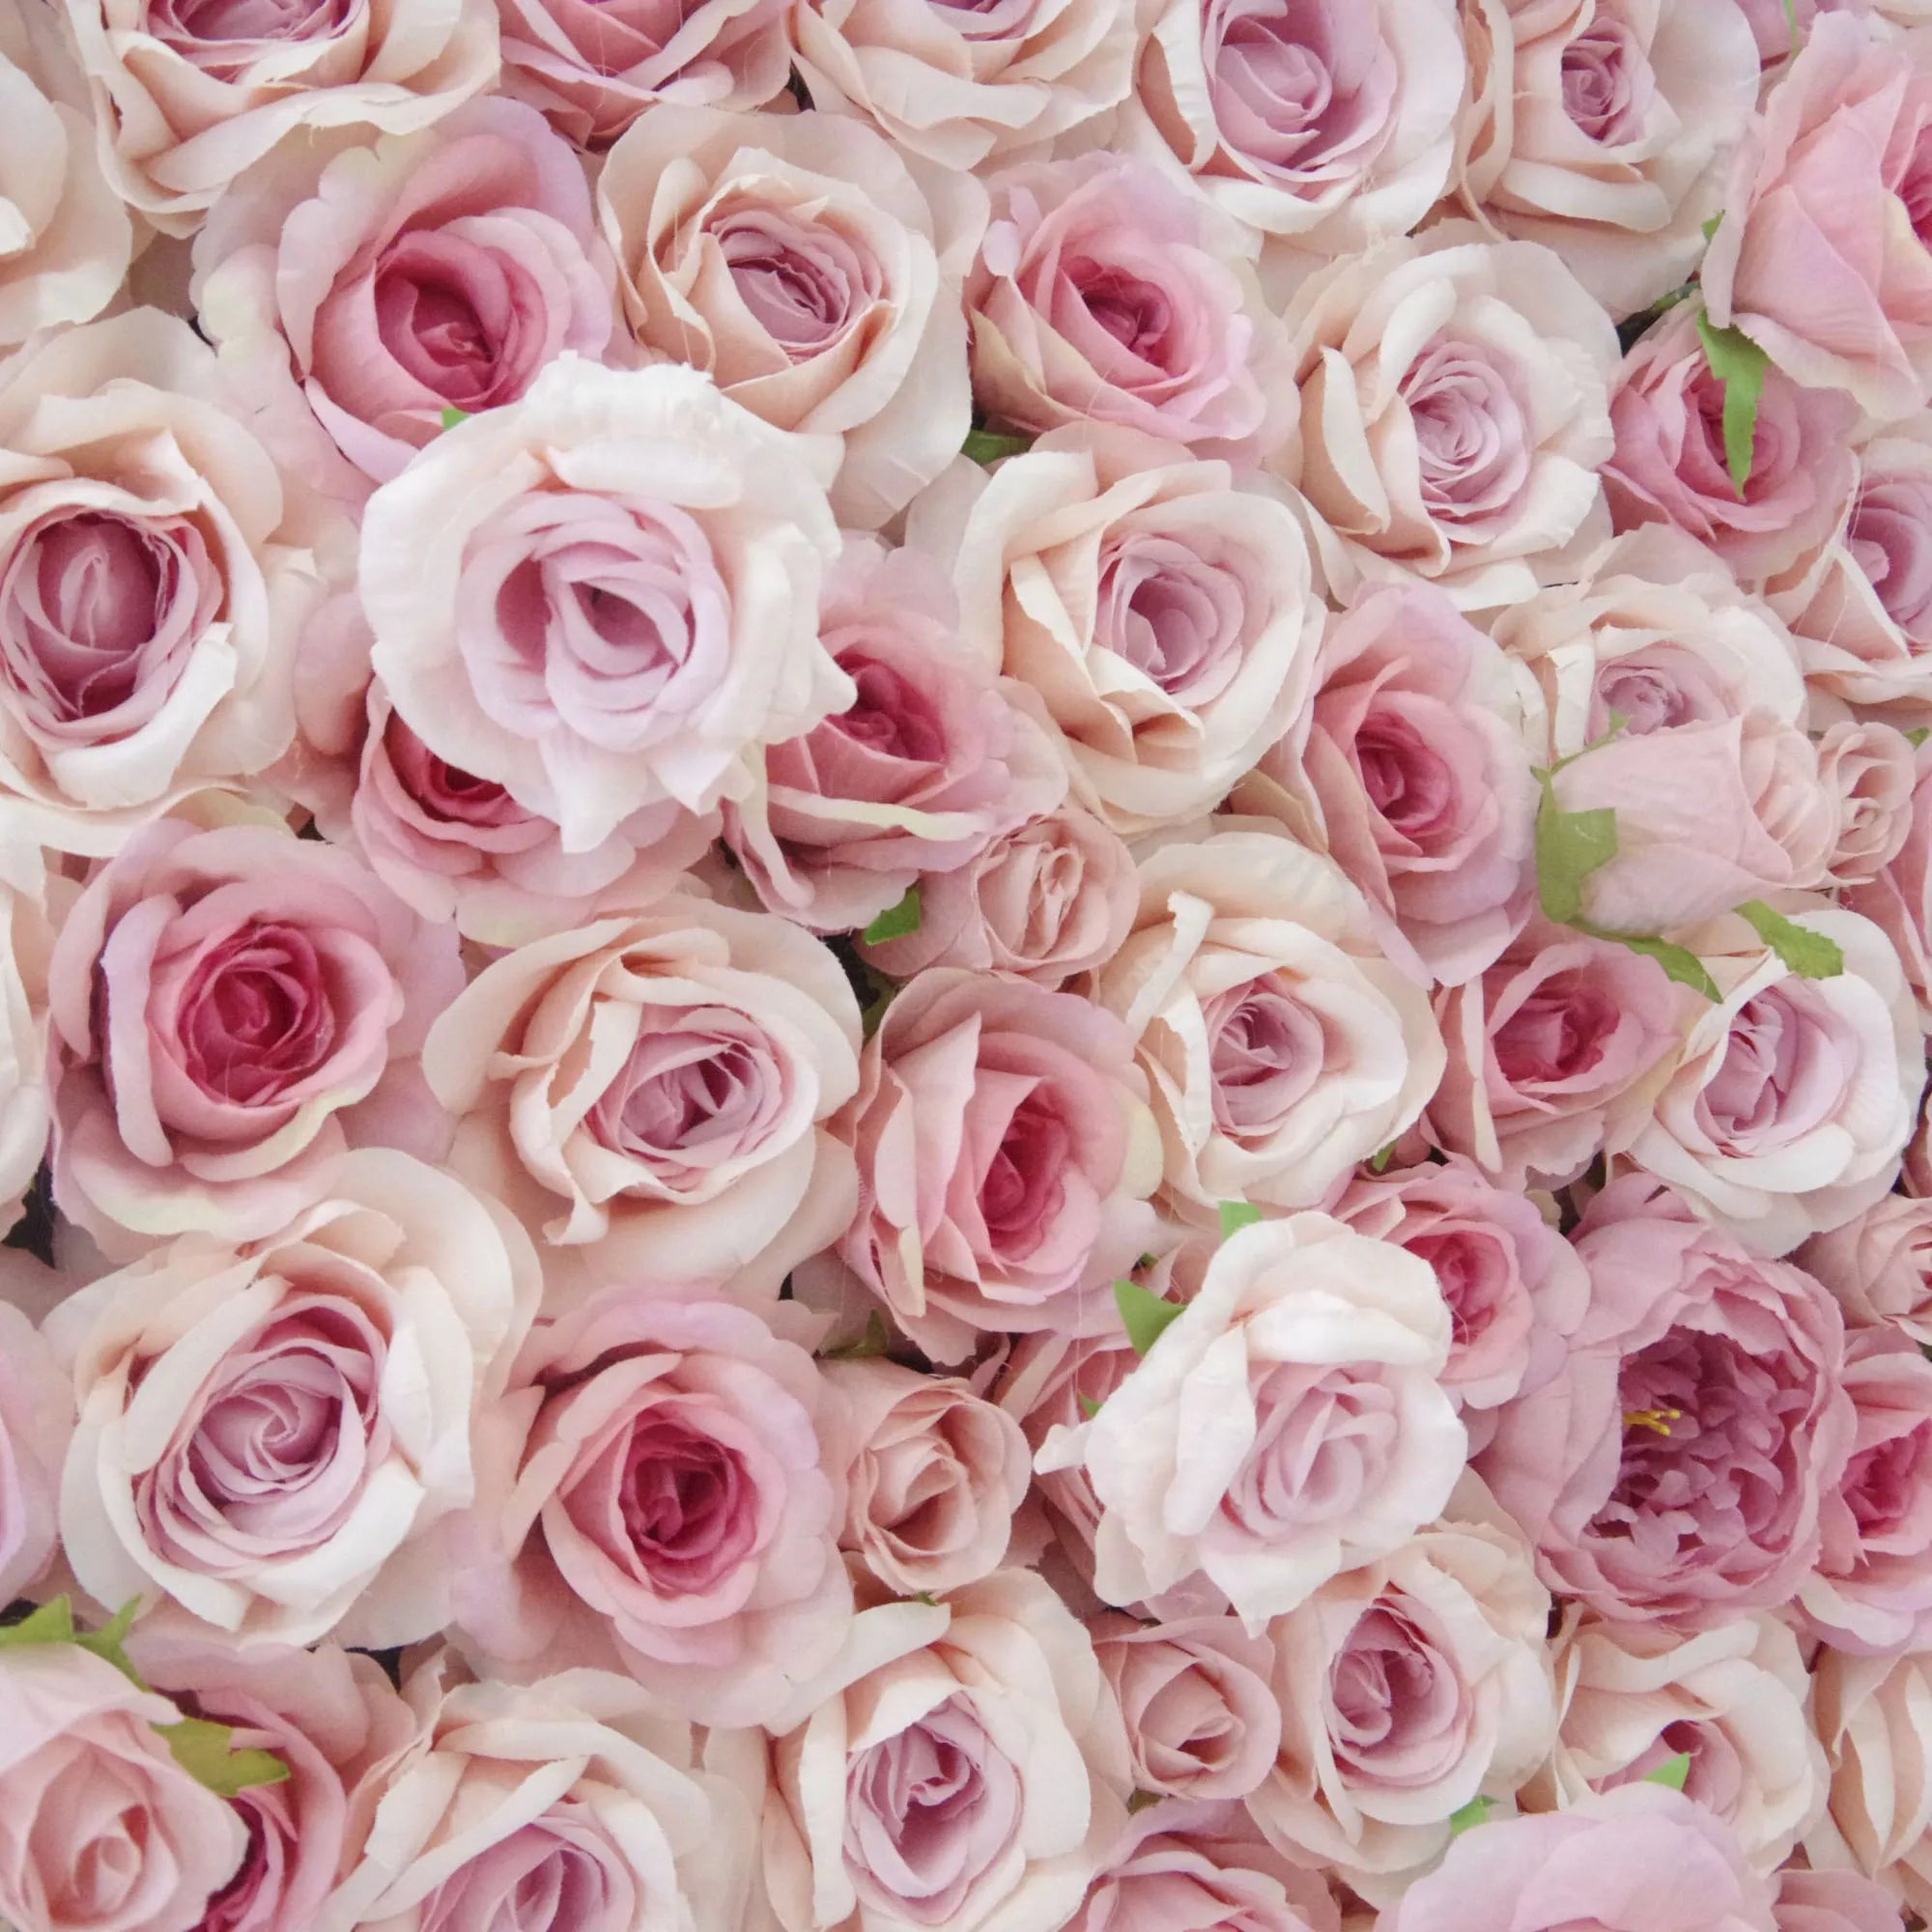 زهور فالار لفة حتى الزهور النسيج الاصطناعي الوردي الزهور مع جوهر رودي الوردي خلفية جدار الزفاف الأزهار ، ديكور حزب الأزهار ، الحدث